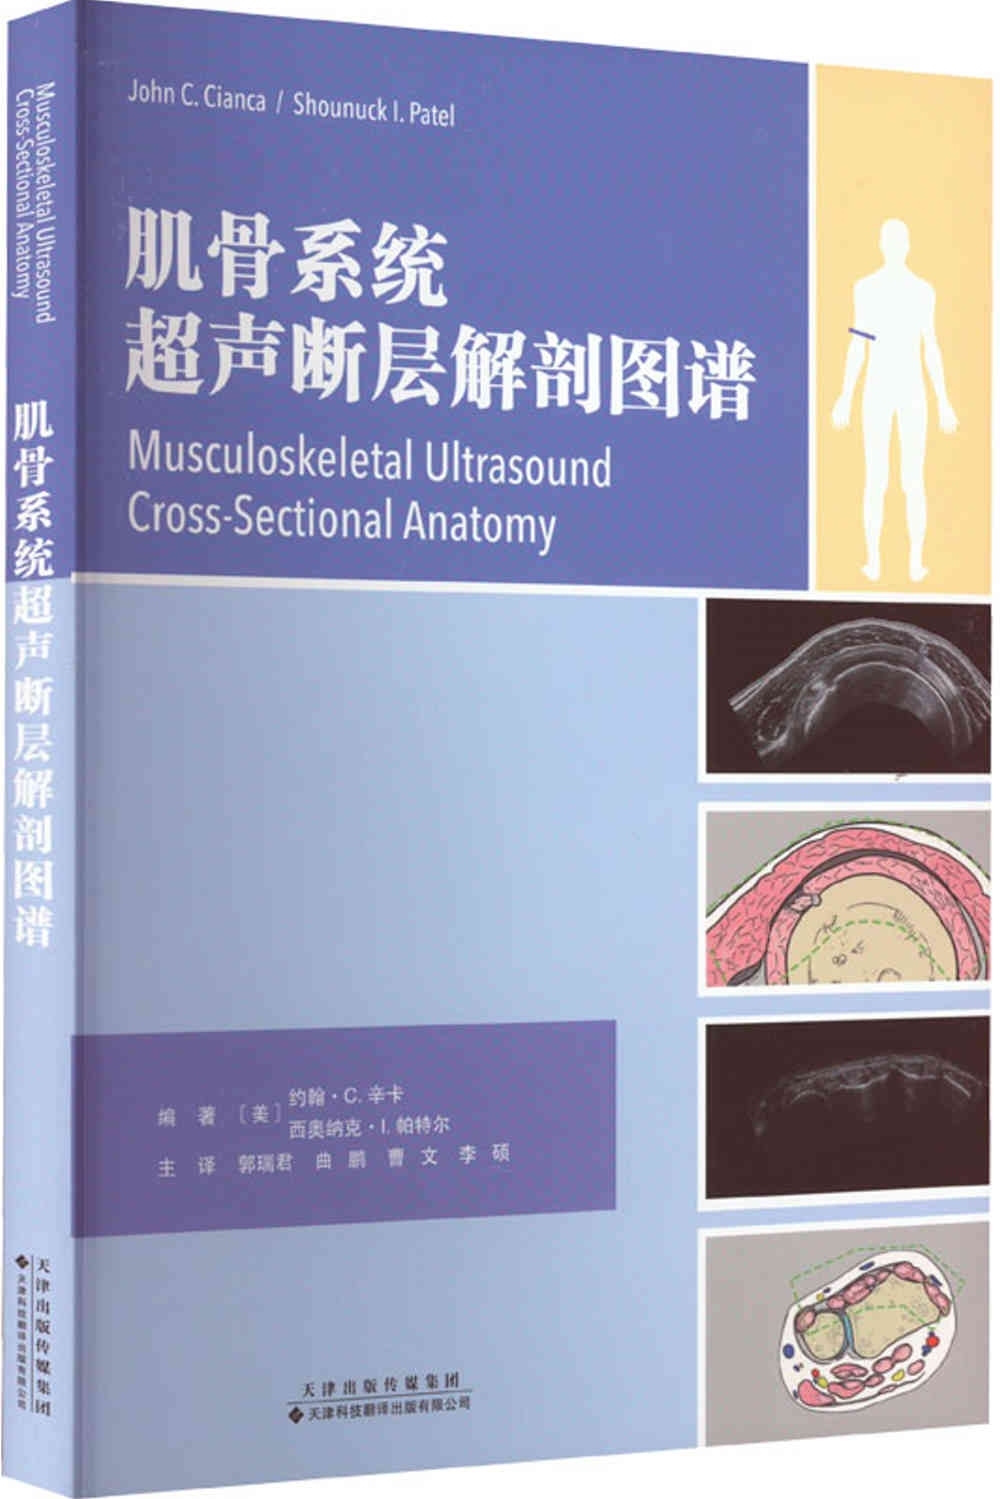 肌骨系統超聲斷層解剖圖譜